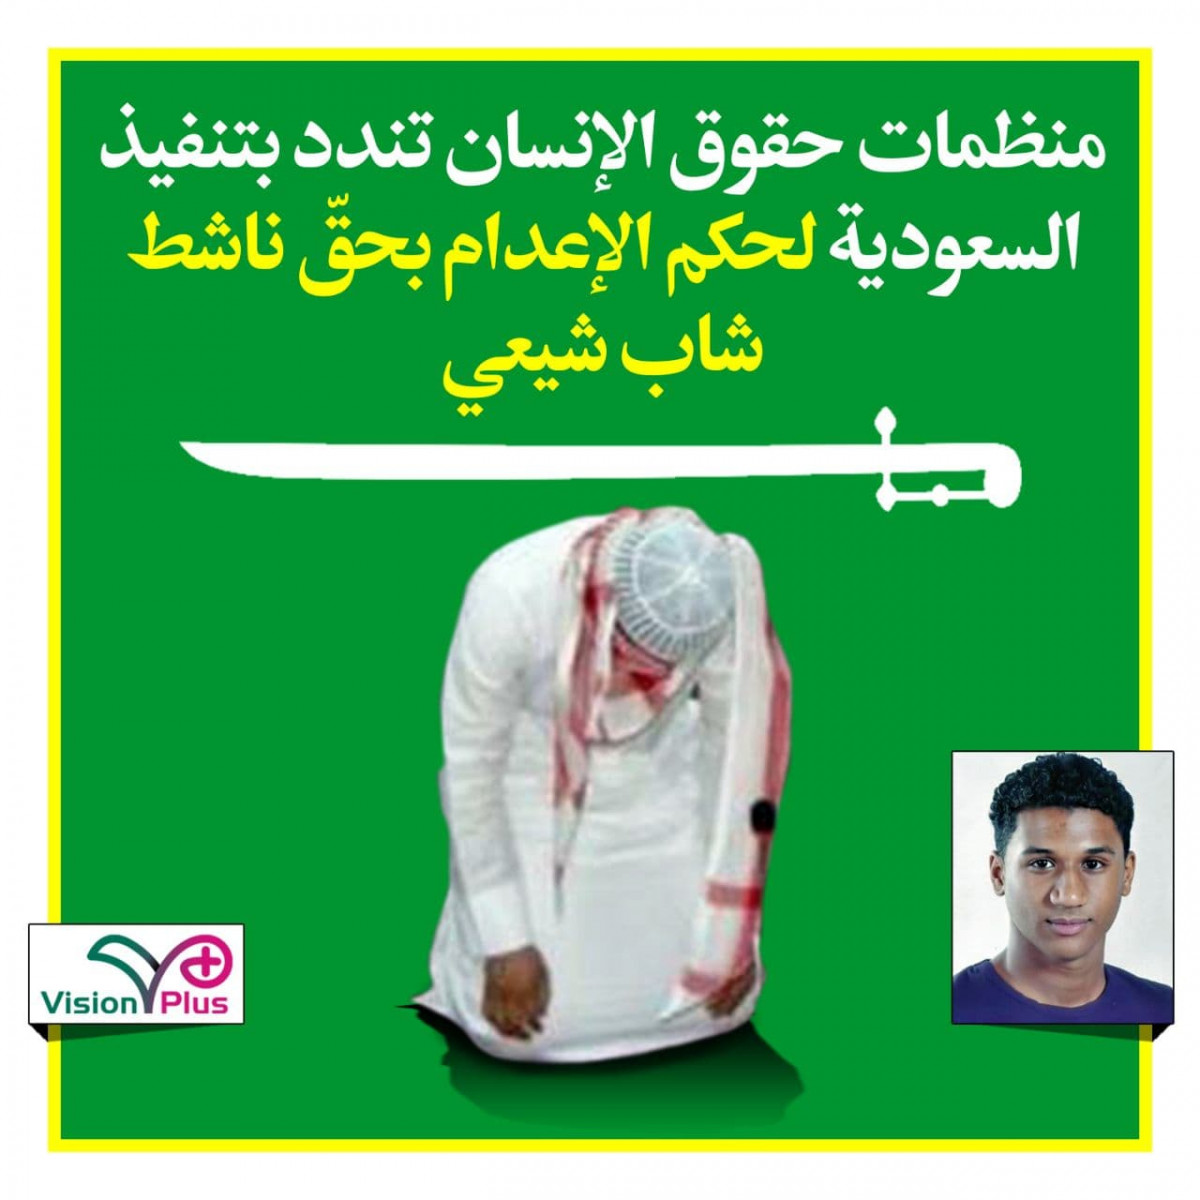 منظمات حقوق الإنسان تندد بتنفيذ السعودية لحكم الإعدام بحقّ ناشط شاب شيعي